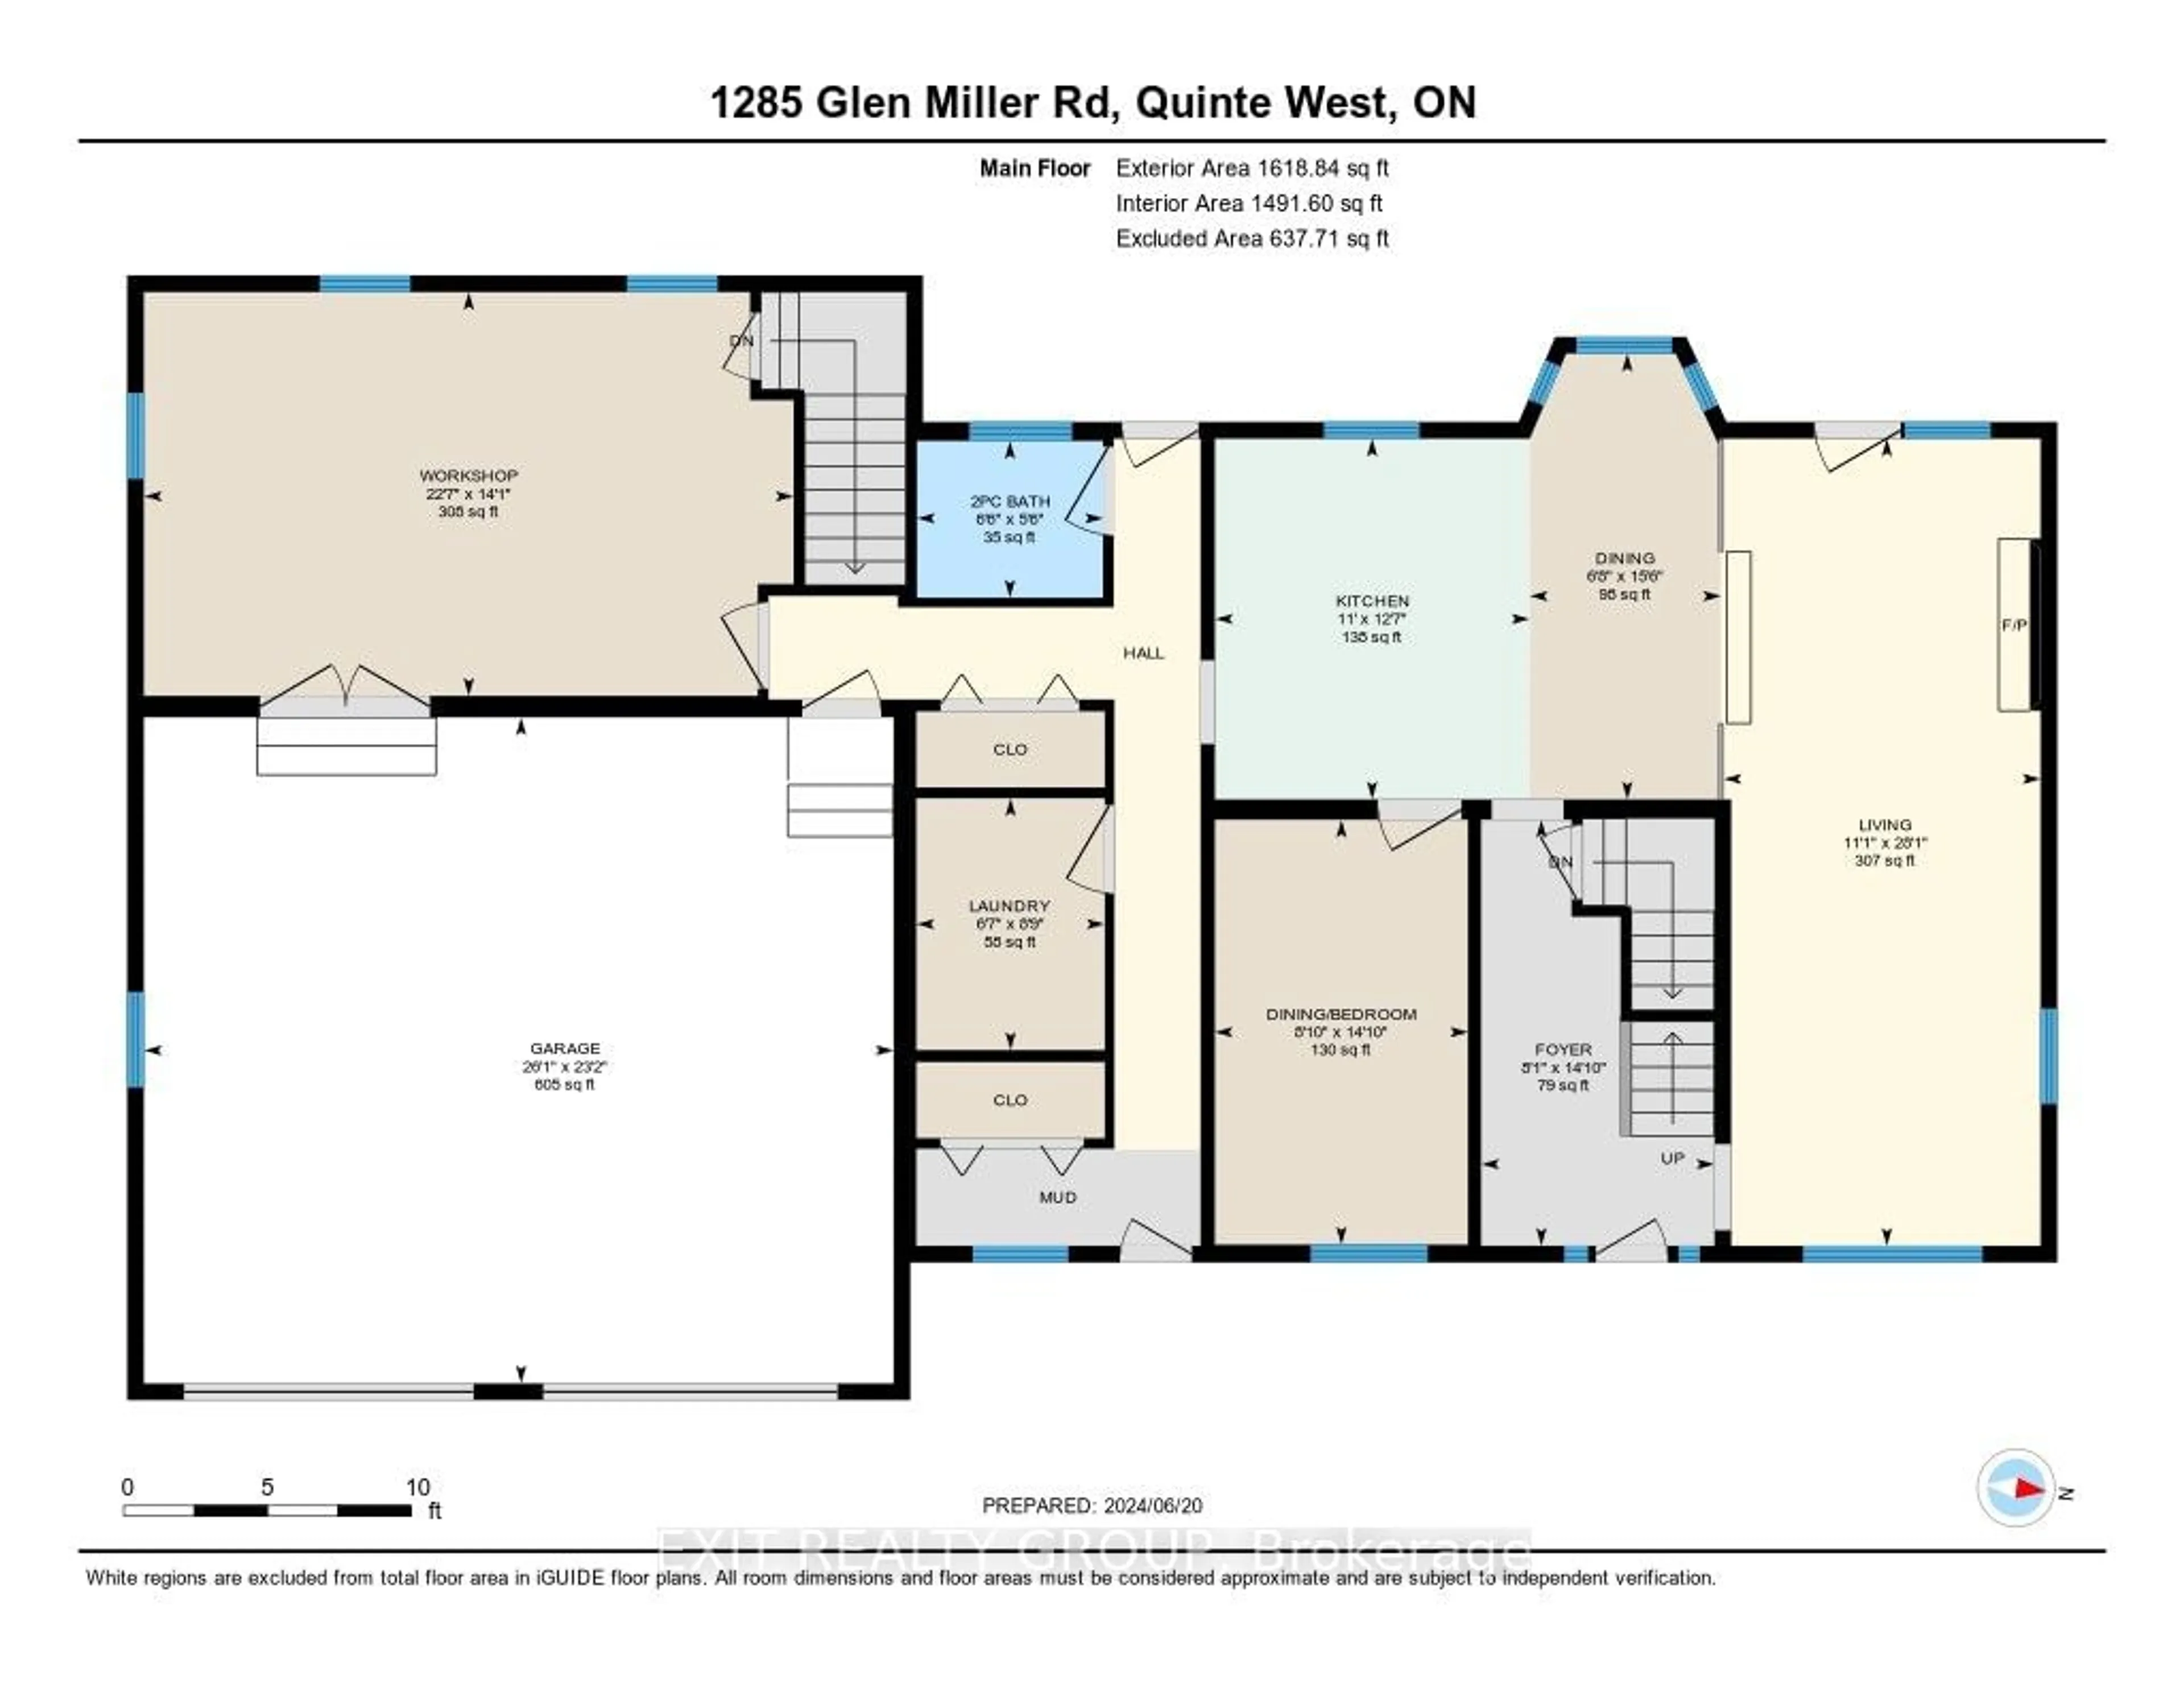 Floor plan for 1285 Glen Miller Rd, Quinte West Ontario K0K 2C0